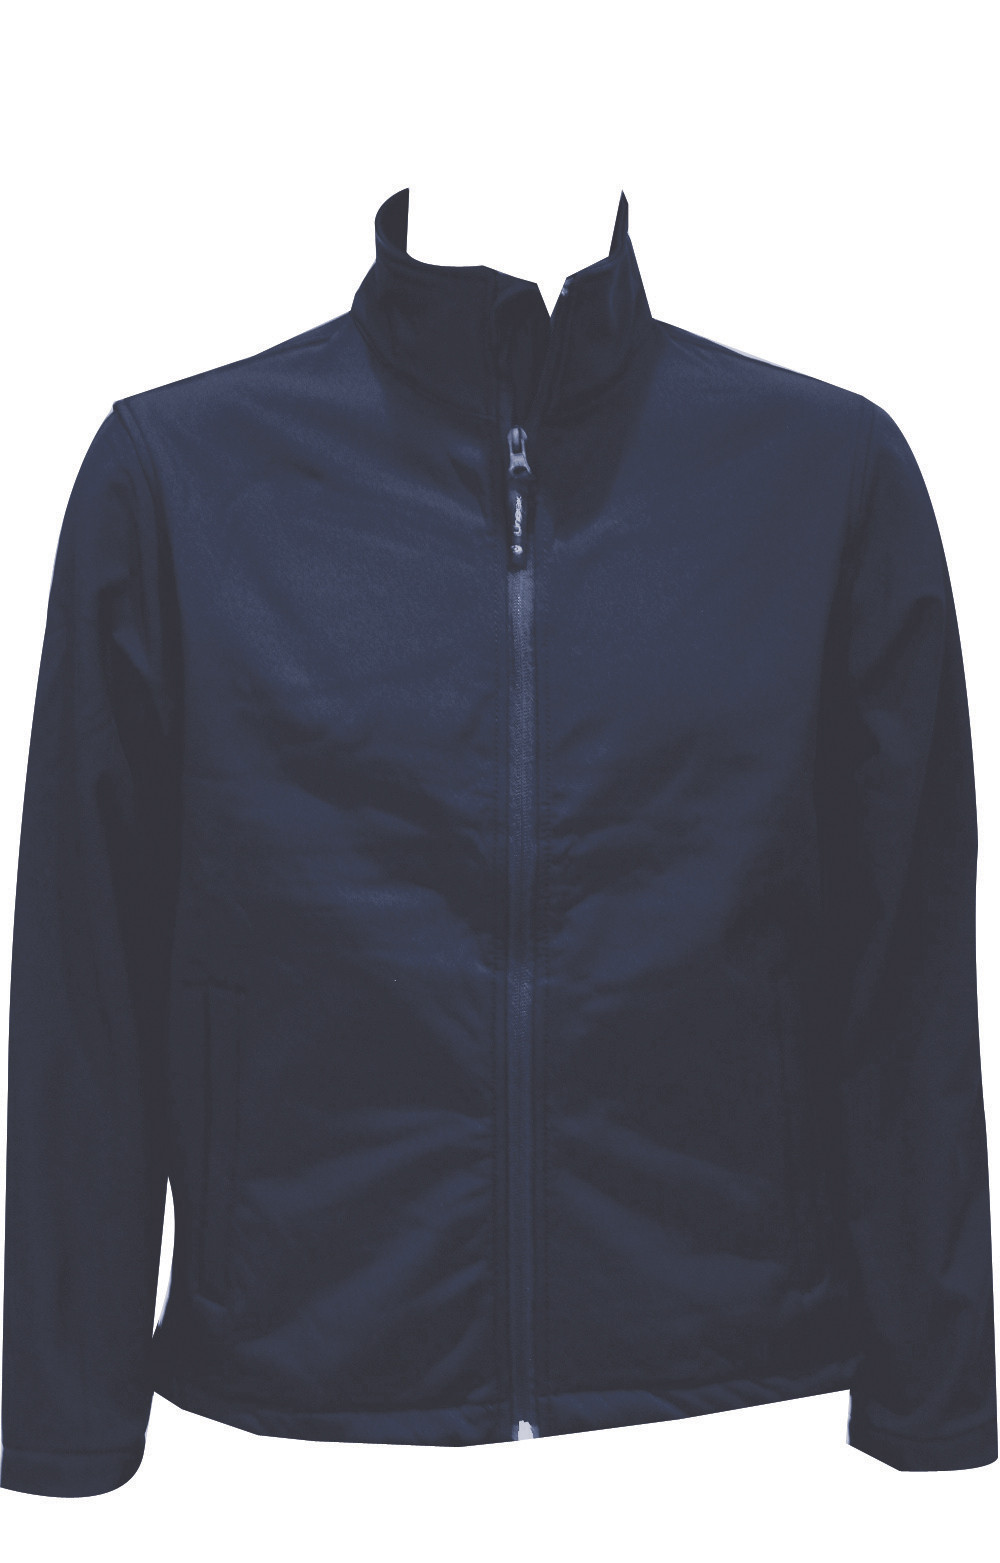 Premium Full Zip Softshell Jacket - Navy